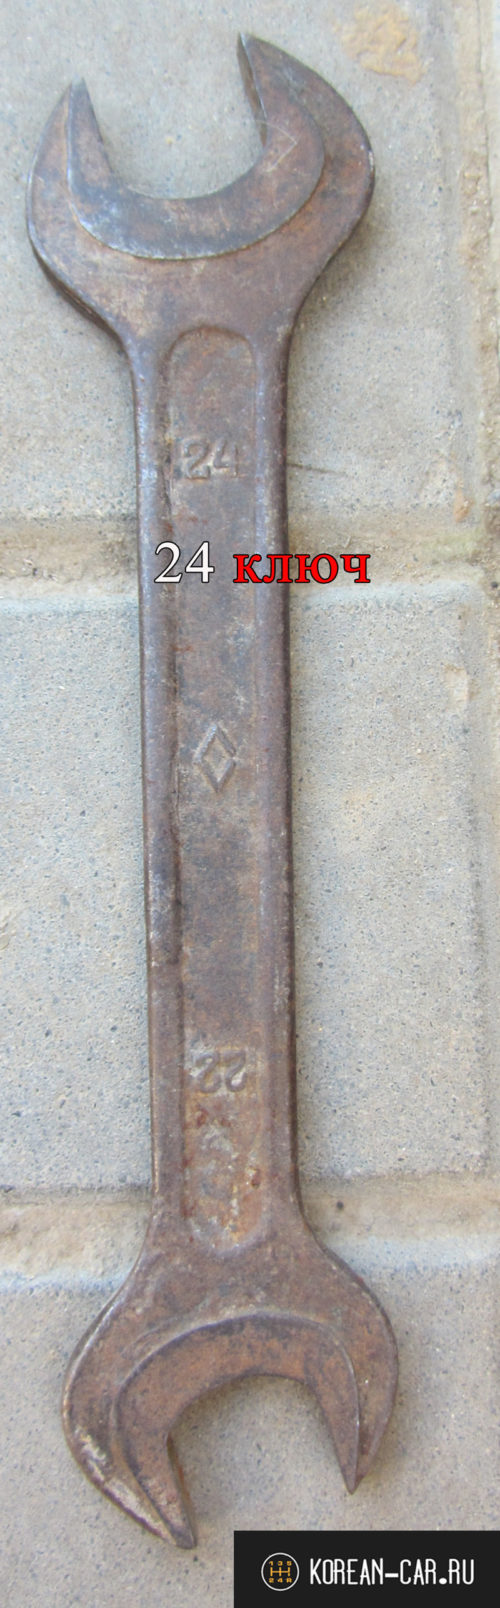 Рожковый советский ключ на 24 лежит на брусчатке